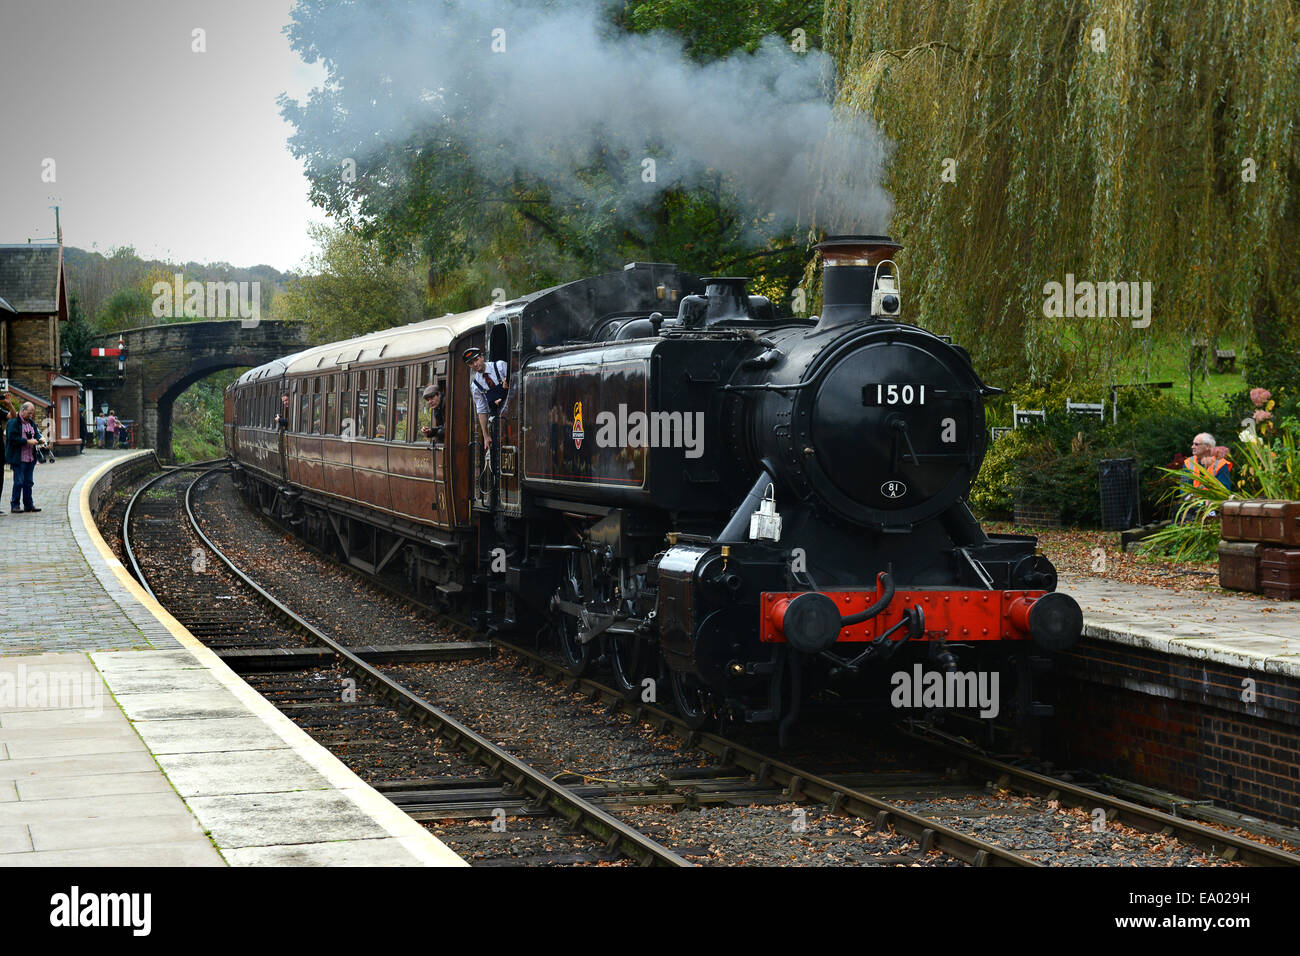 Severn Valley Railway Dampflokomotiven Lok Zug bei Arley Station Uk Stockfoto